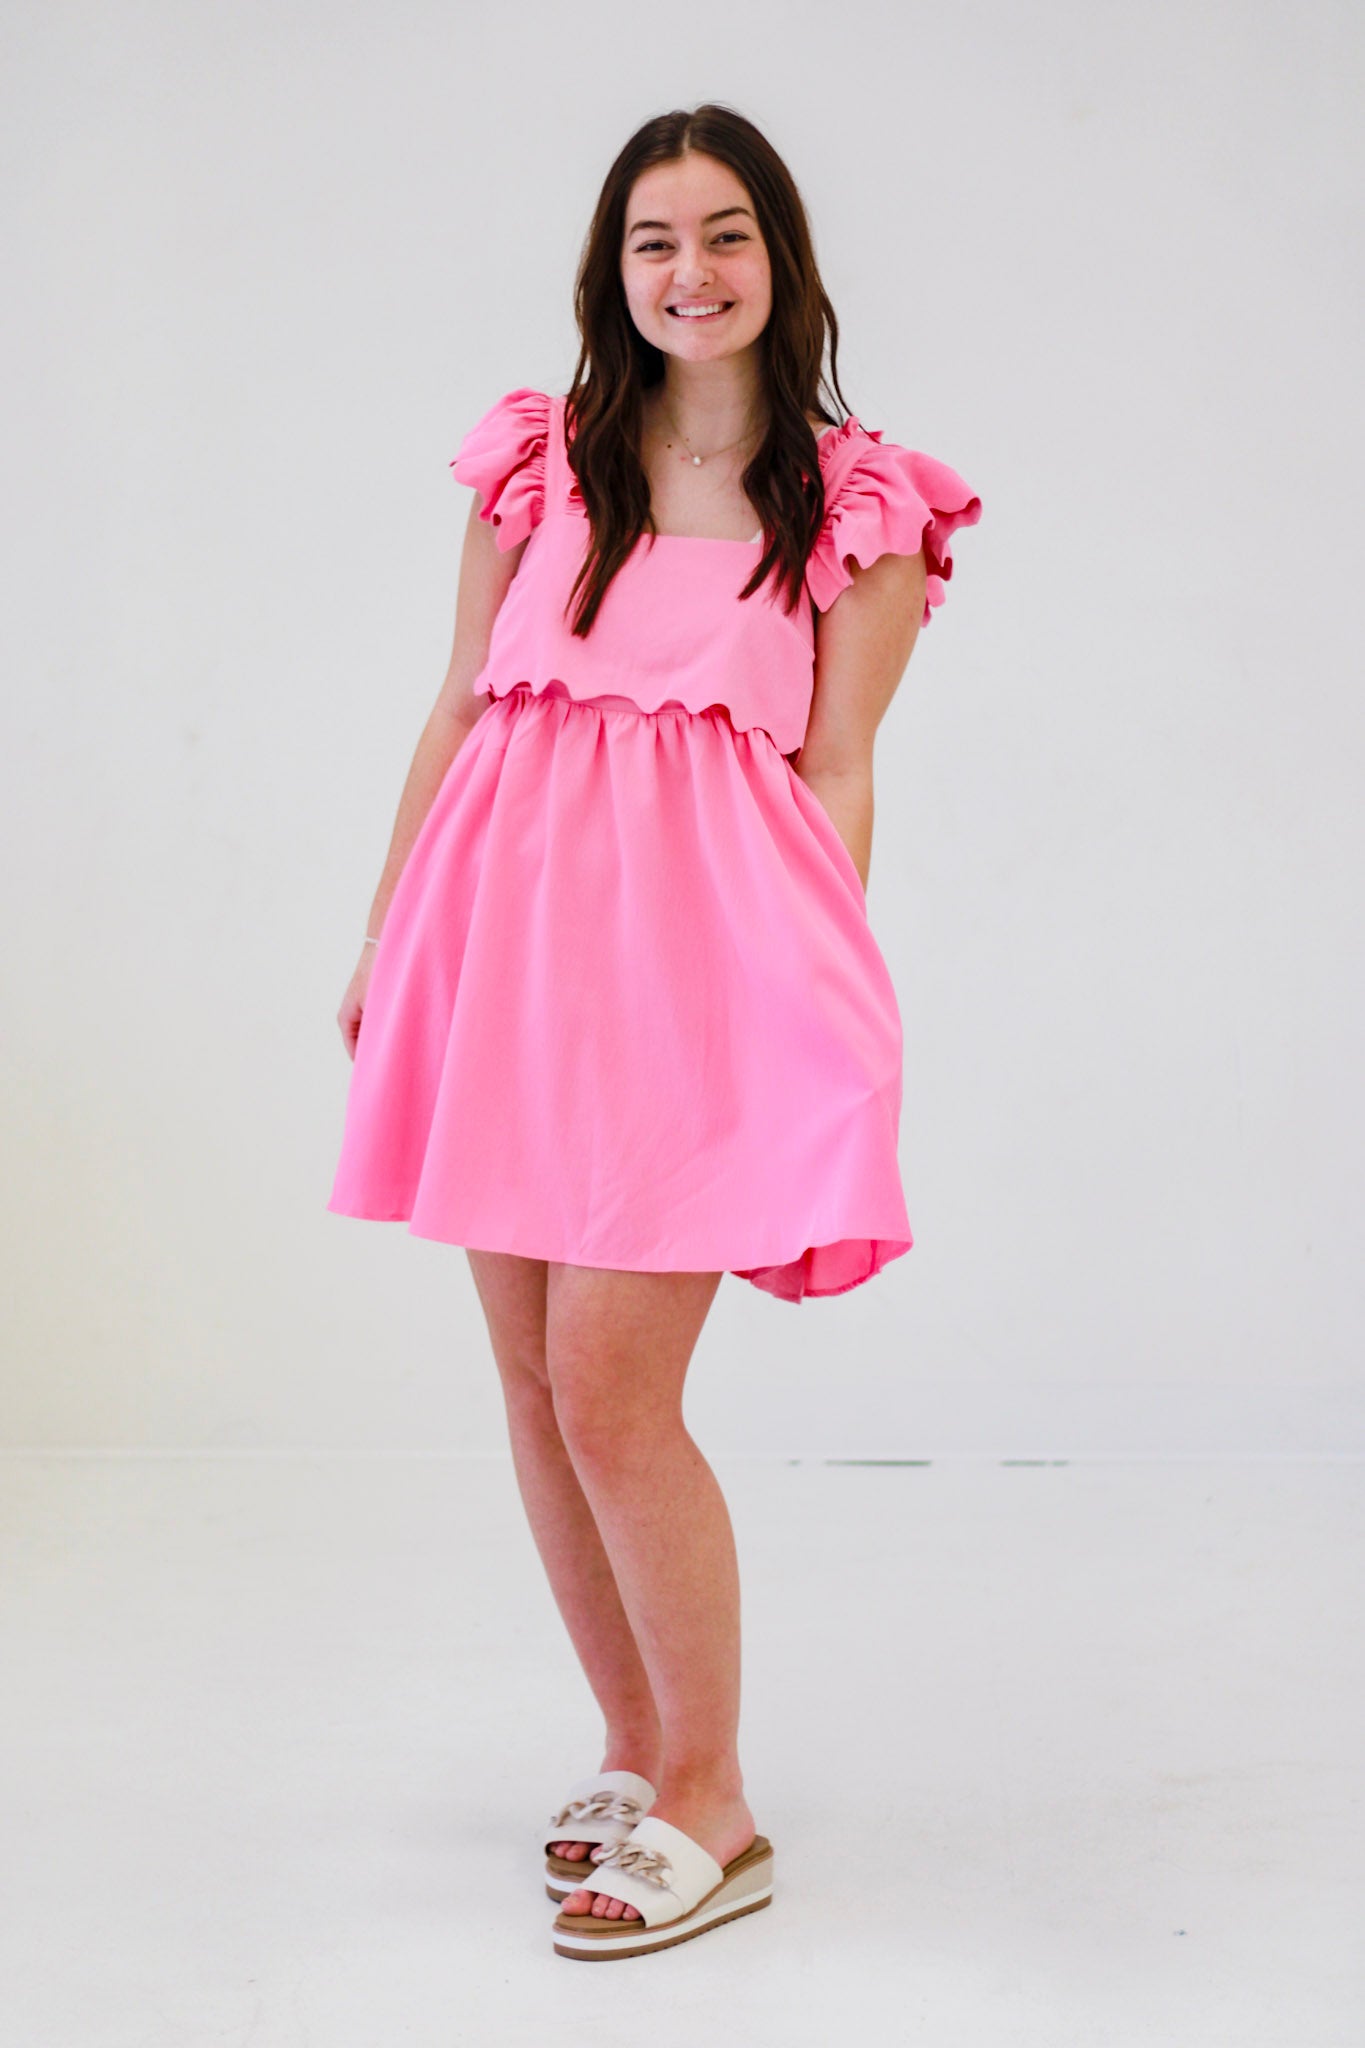 The Sweetheart Dress in Bubblegum Pink